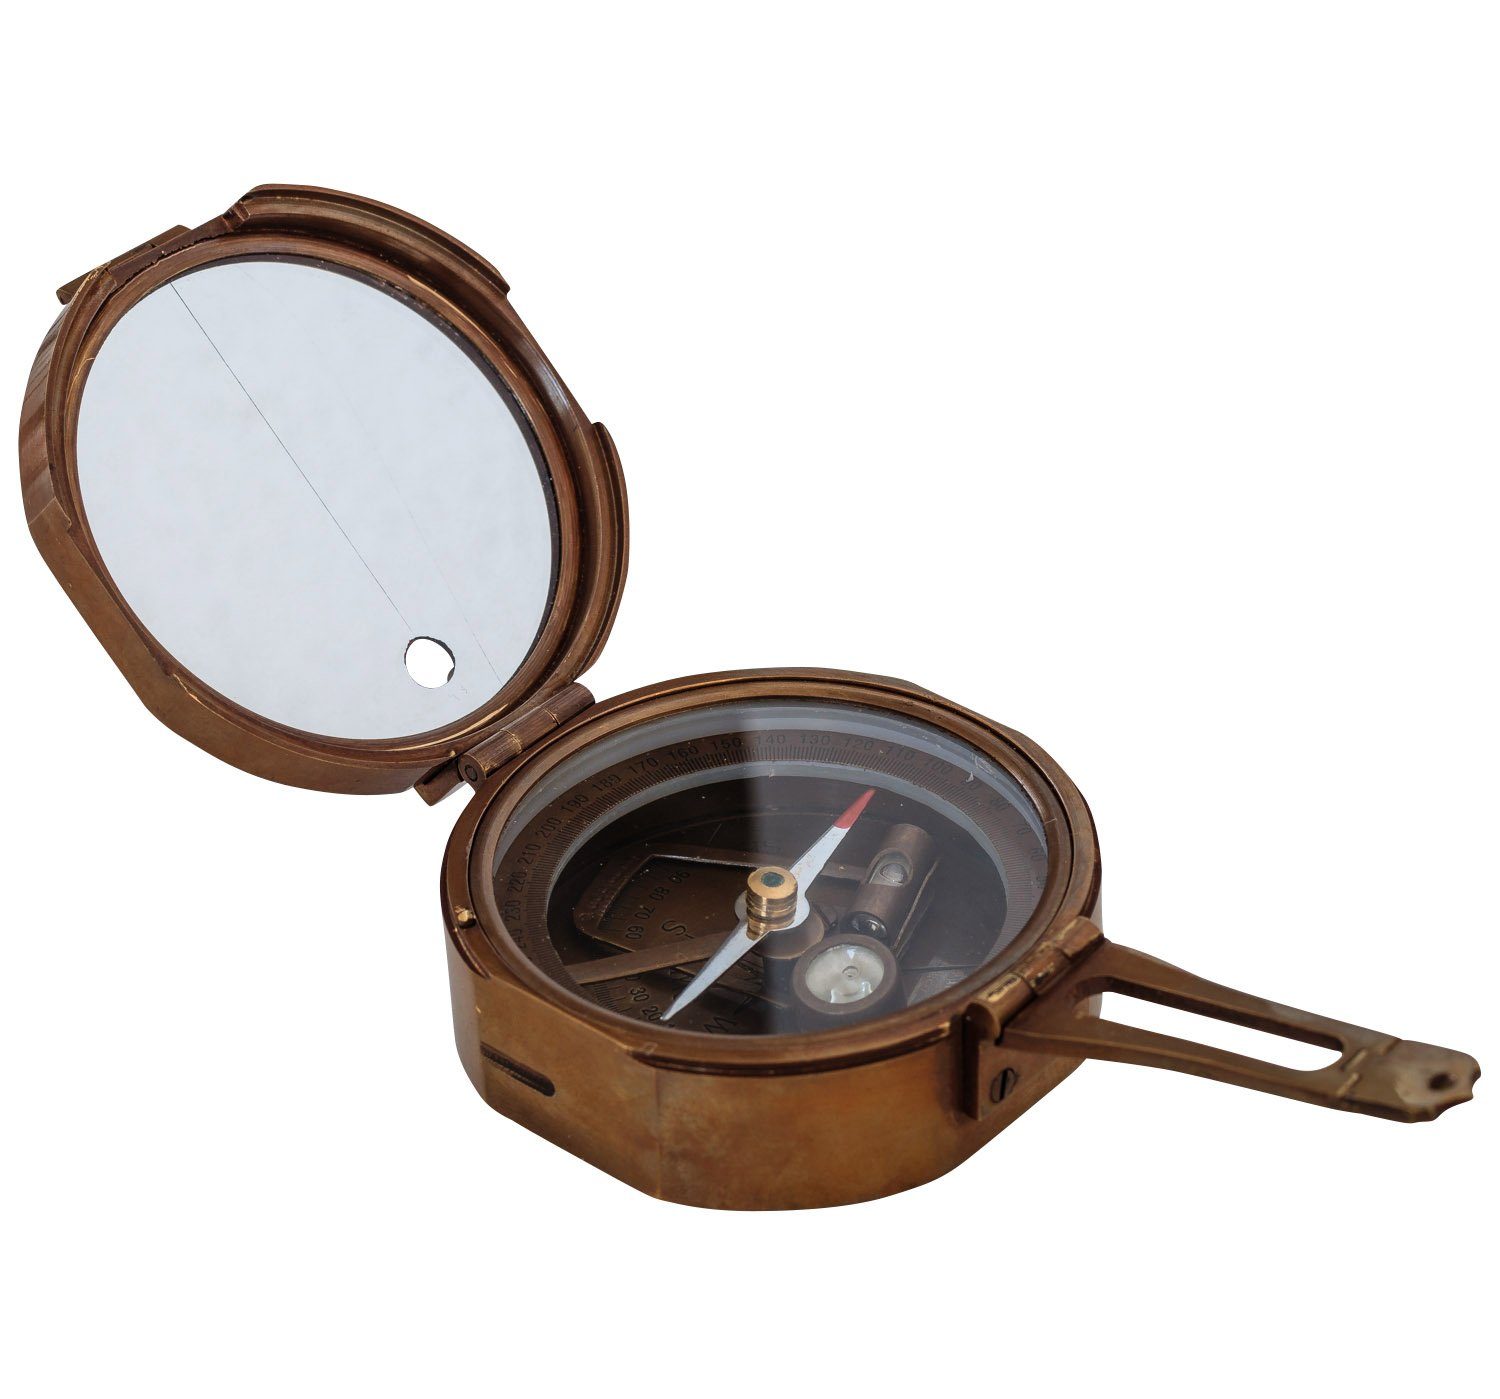 Aubaho Kompass Kompass Peilkompass Maritim Navigation Messing Glas Antik-Stil Replik